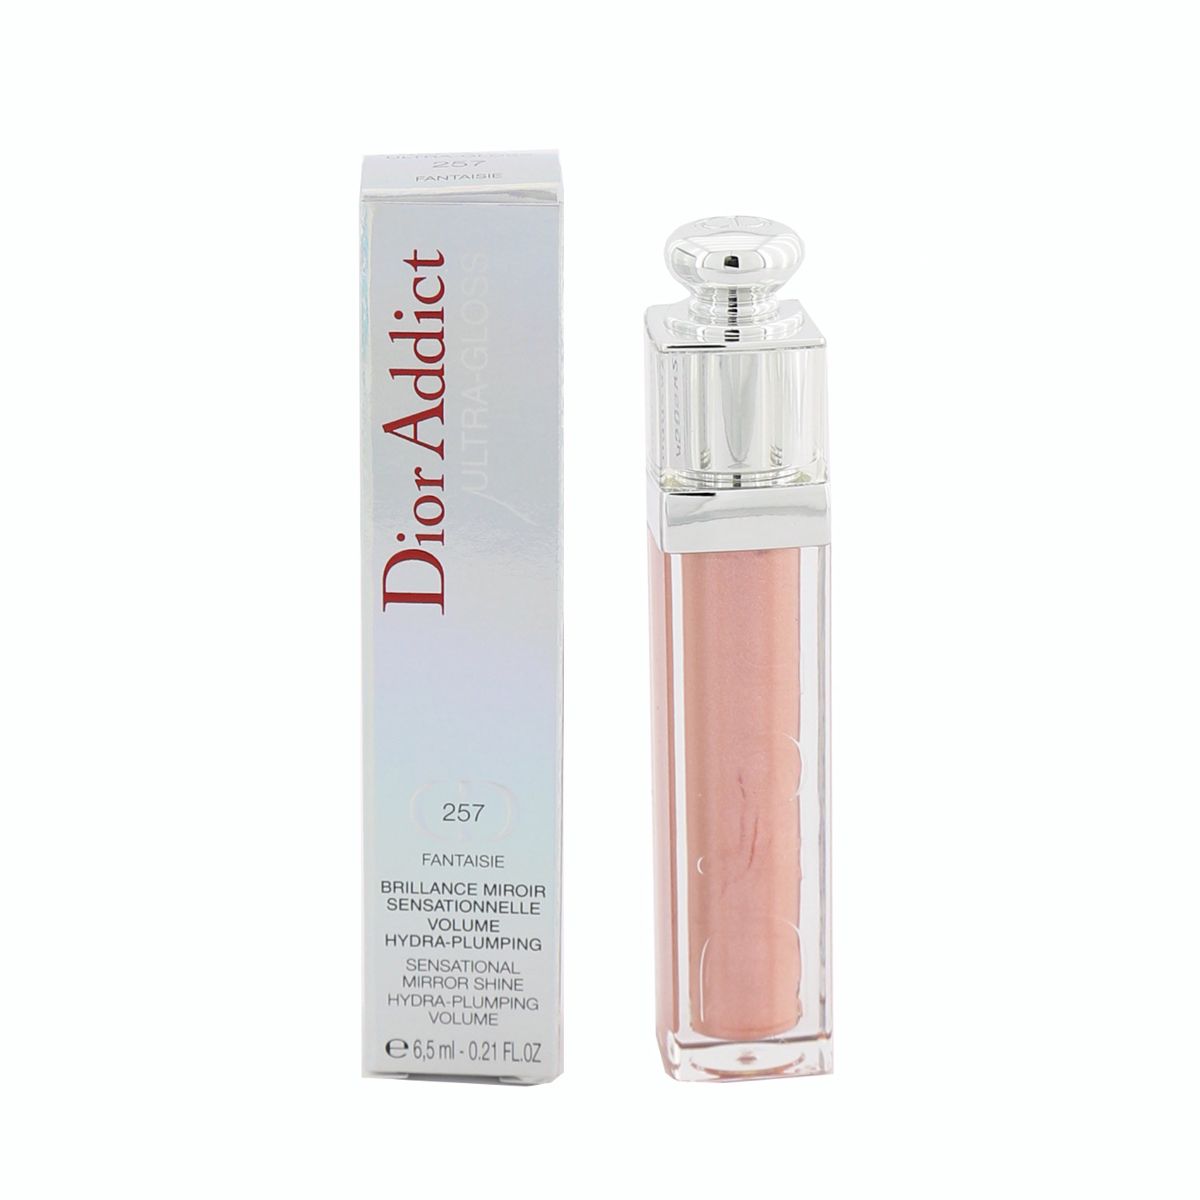 Dior Addict Ultra Gloss (Sensational Mirror Shine) - No. 257 Fantaisie F028530257 Christian Dior Image